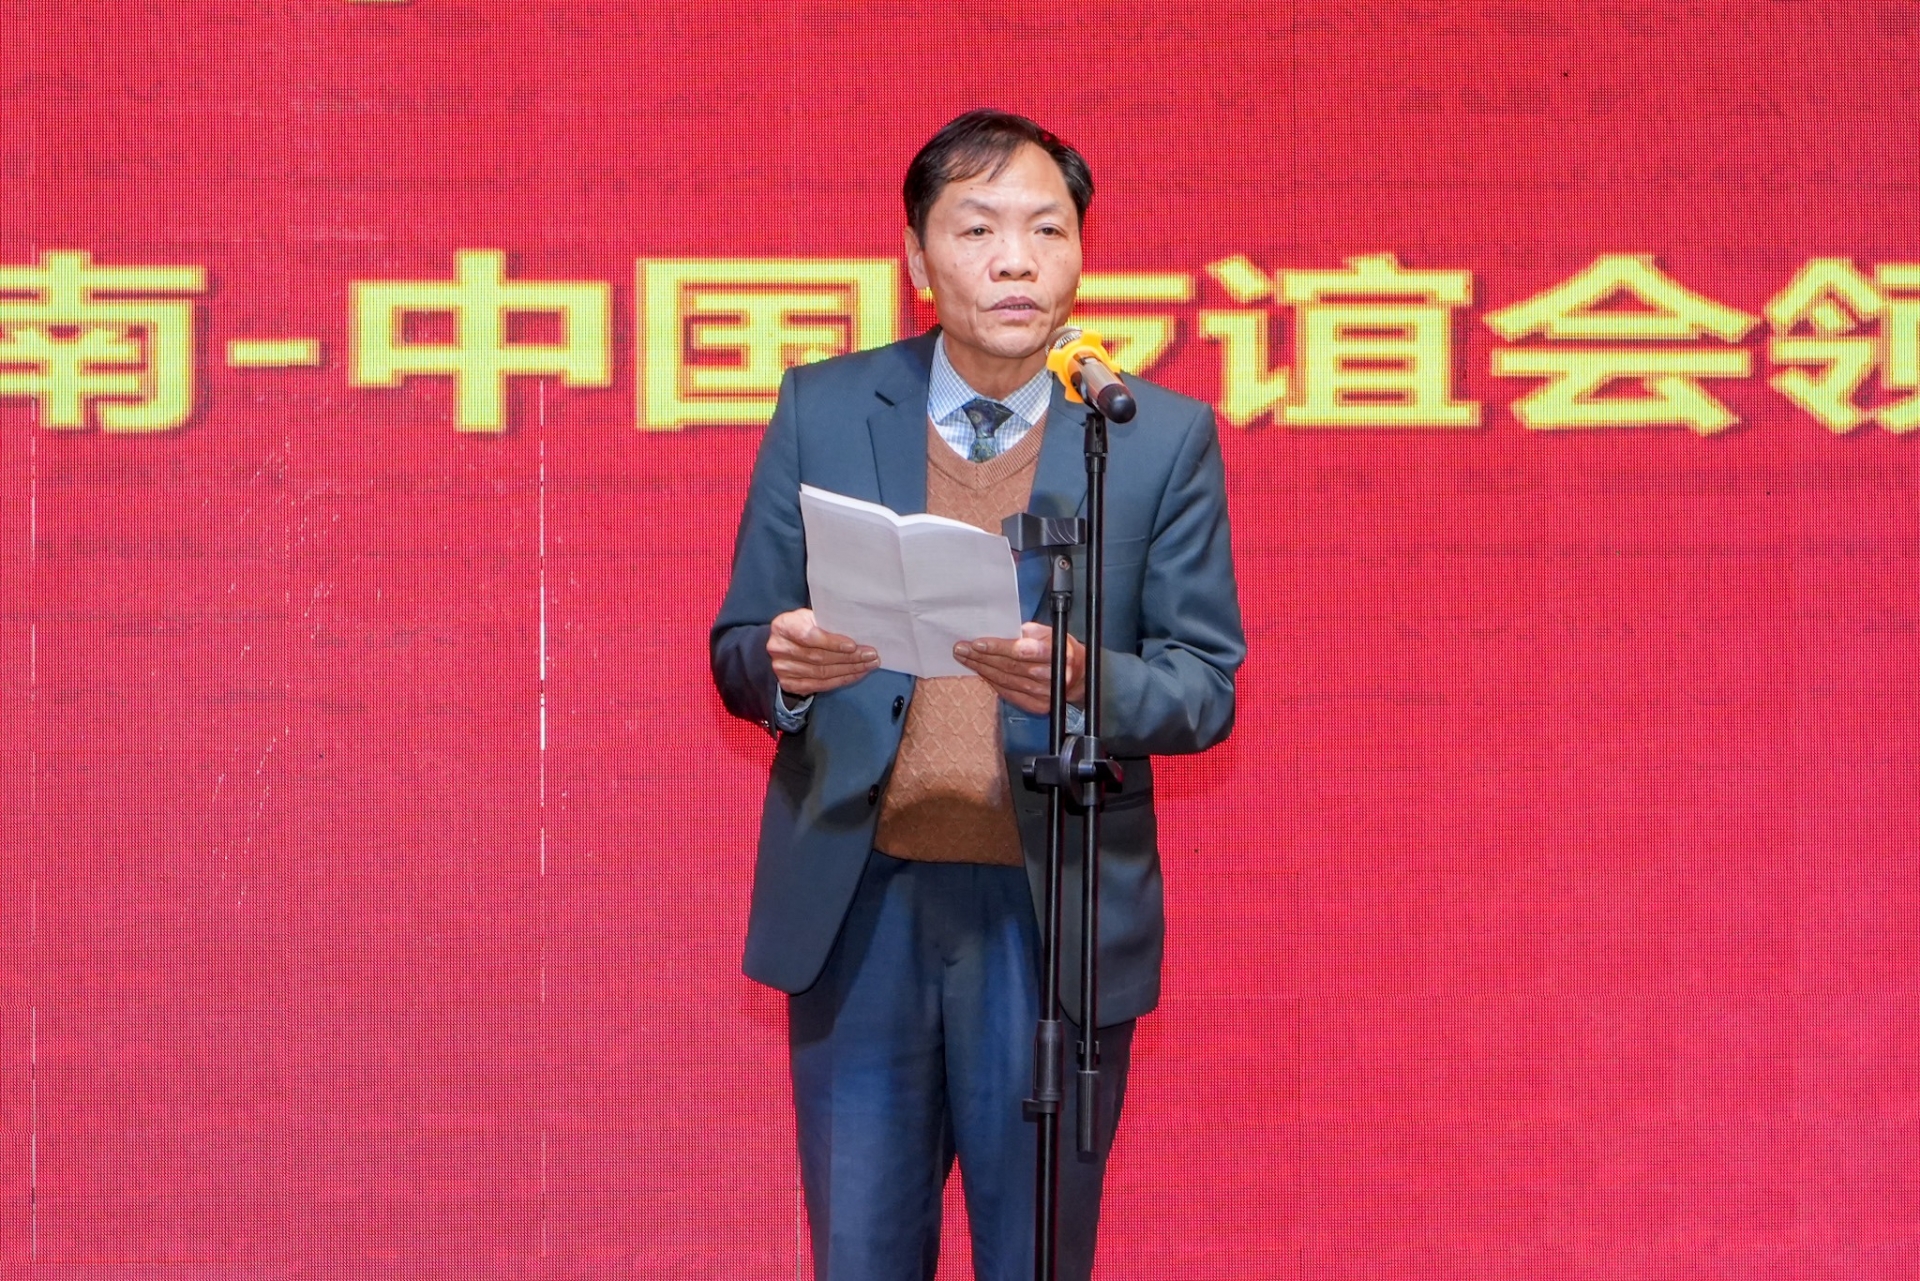 海防市越中友好协会副主席黎文贵在活动上致辞。